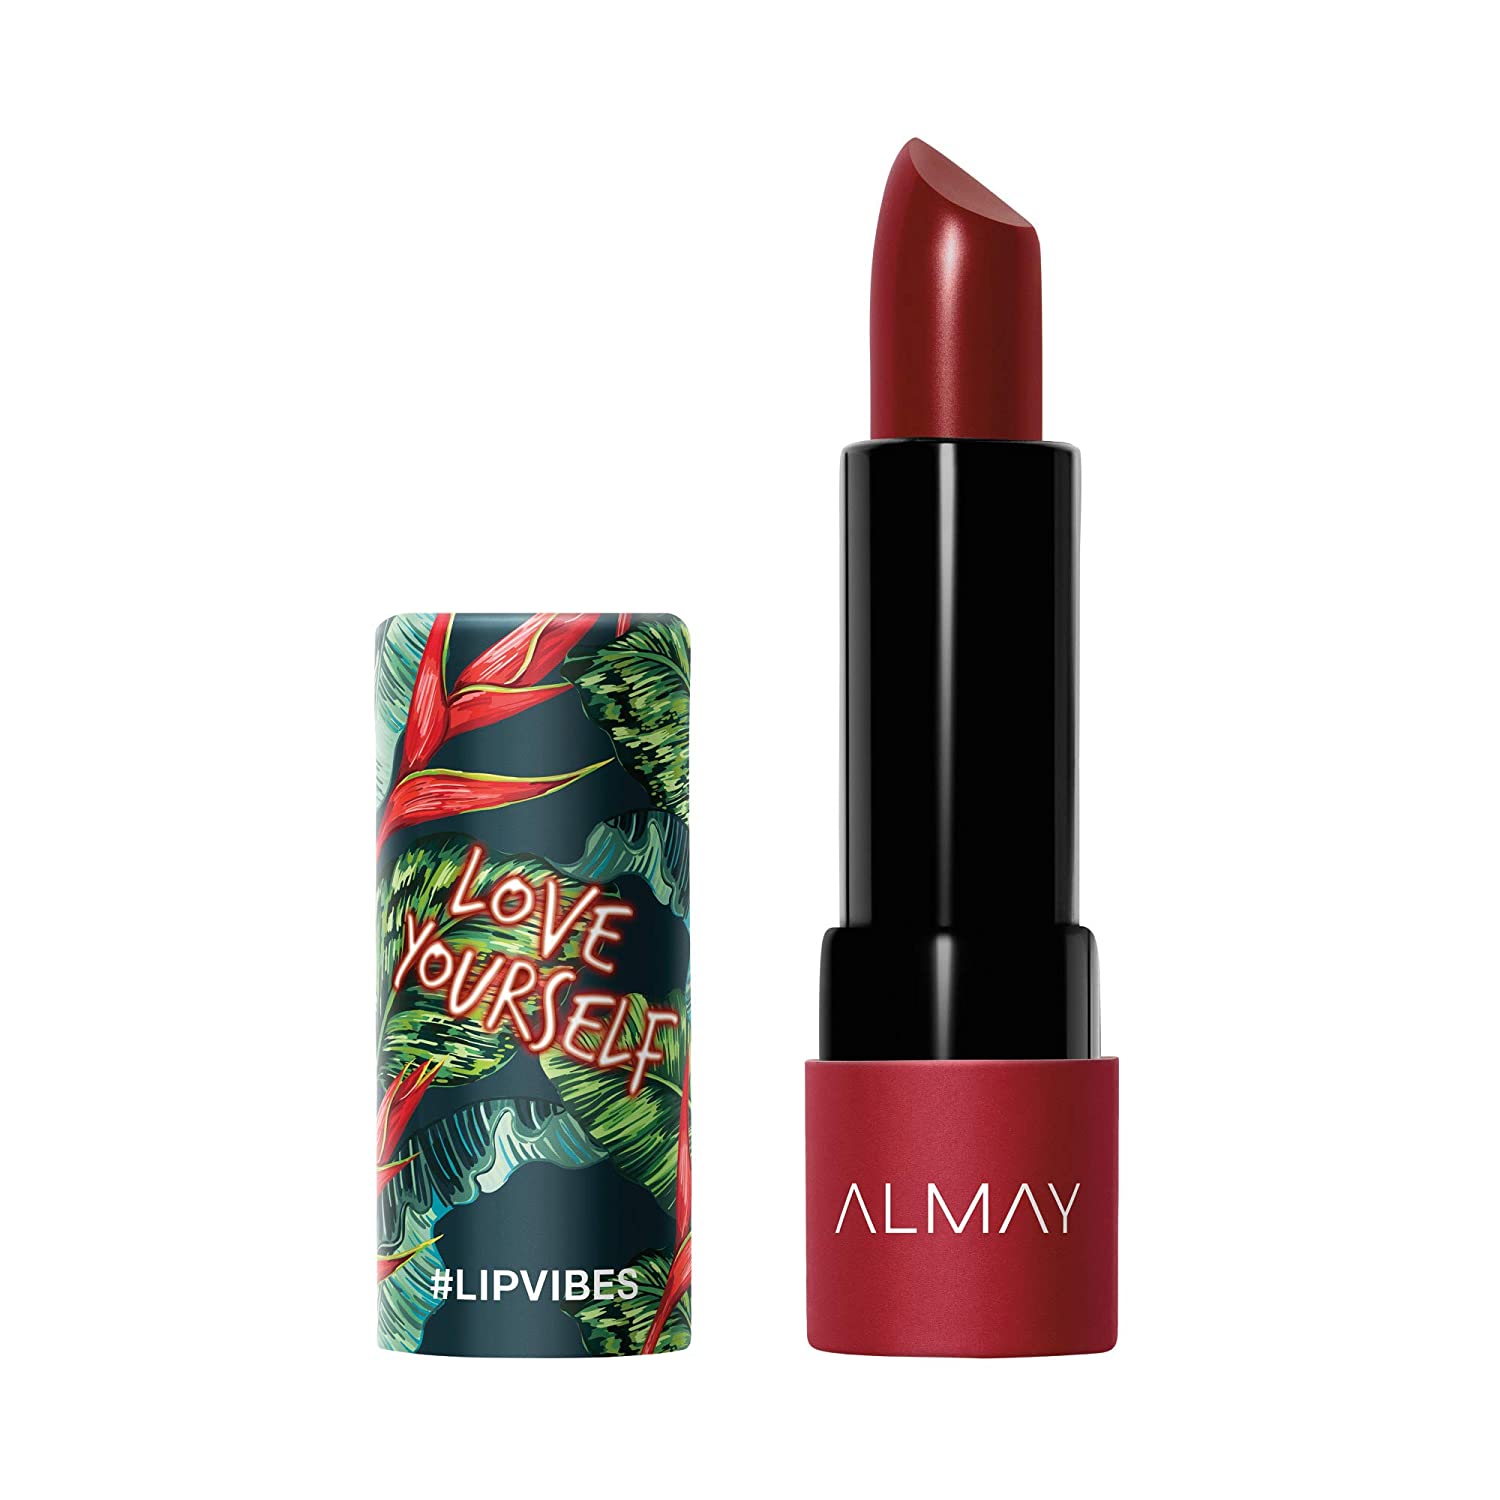 Almay Shea Butter & Vitamin E Oil Hypoallergenic Lipstick